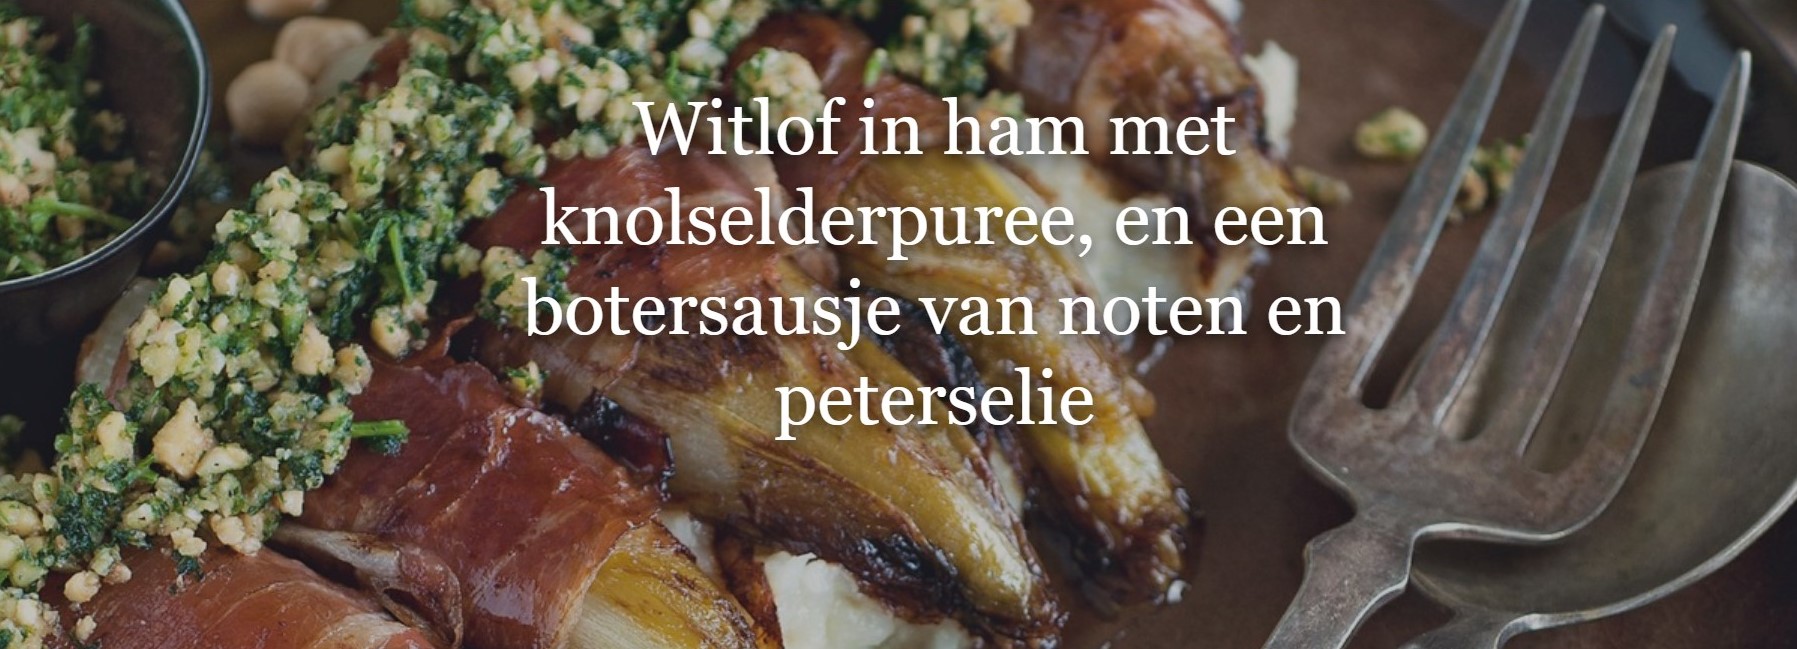 Witlof In Ham Met Knolselderpuree En Een Botersausje Van Noten En